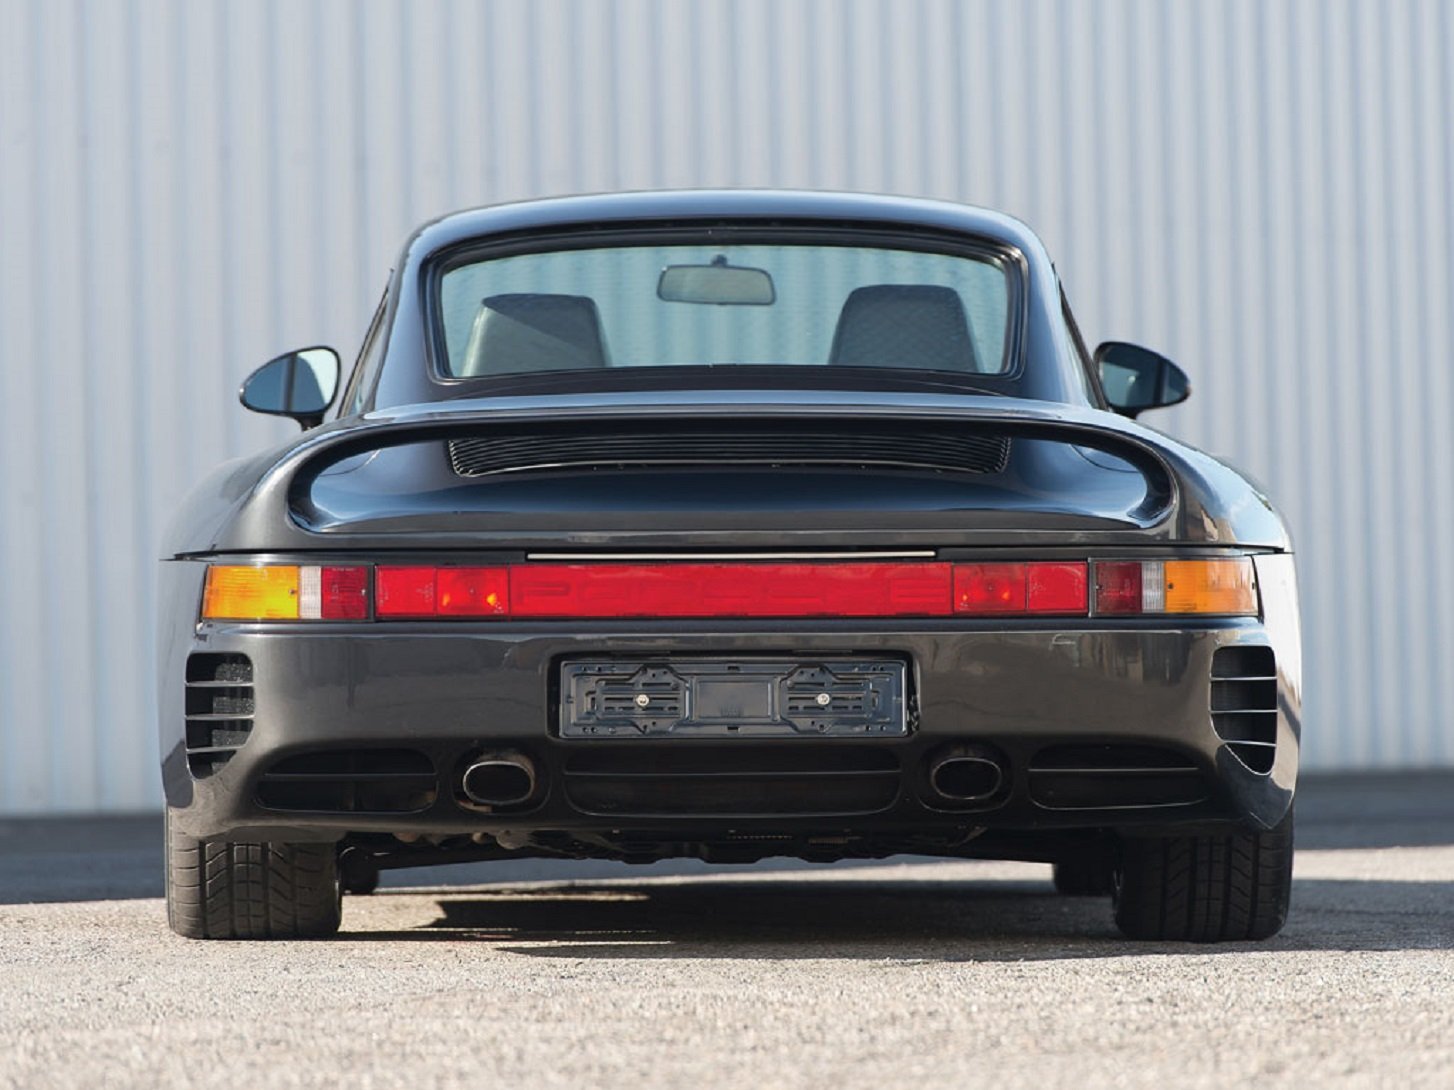 1988, 959, Cars, Classic, Komfort, Porsche Wallpaper